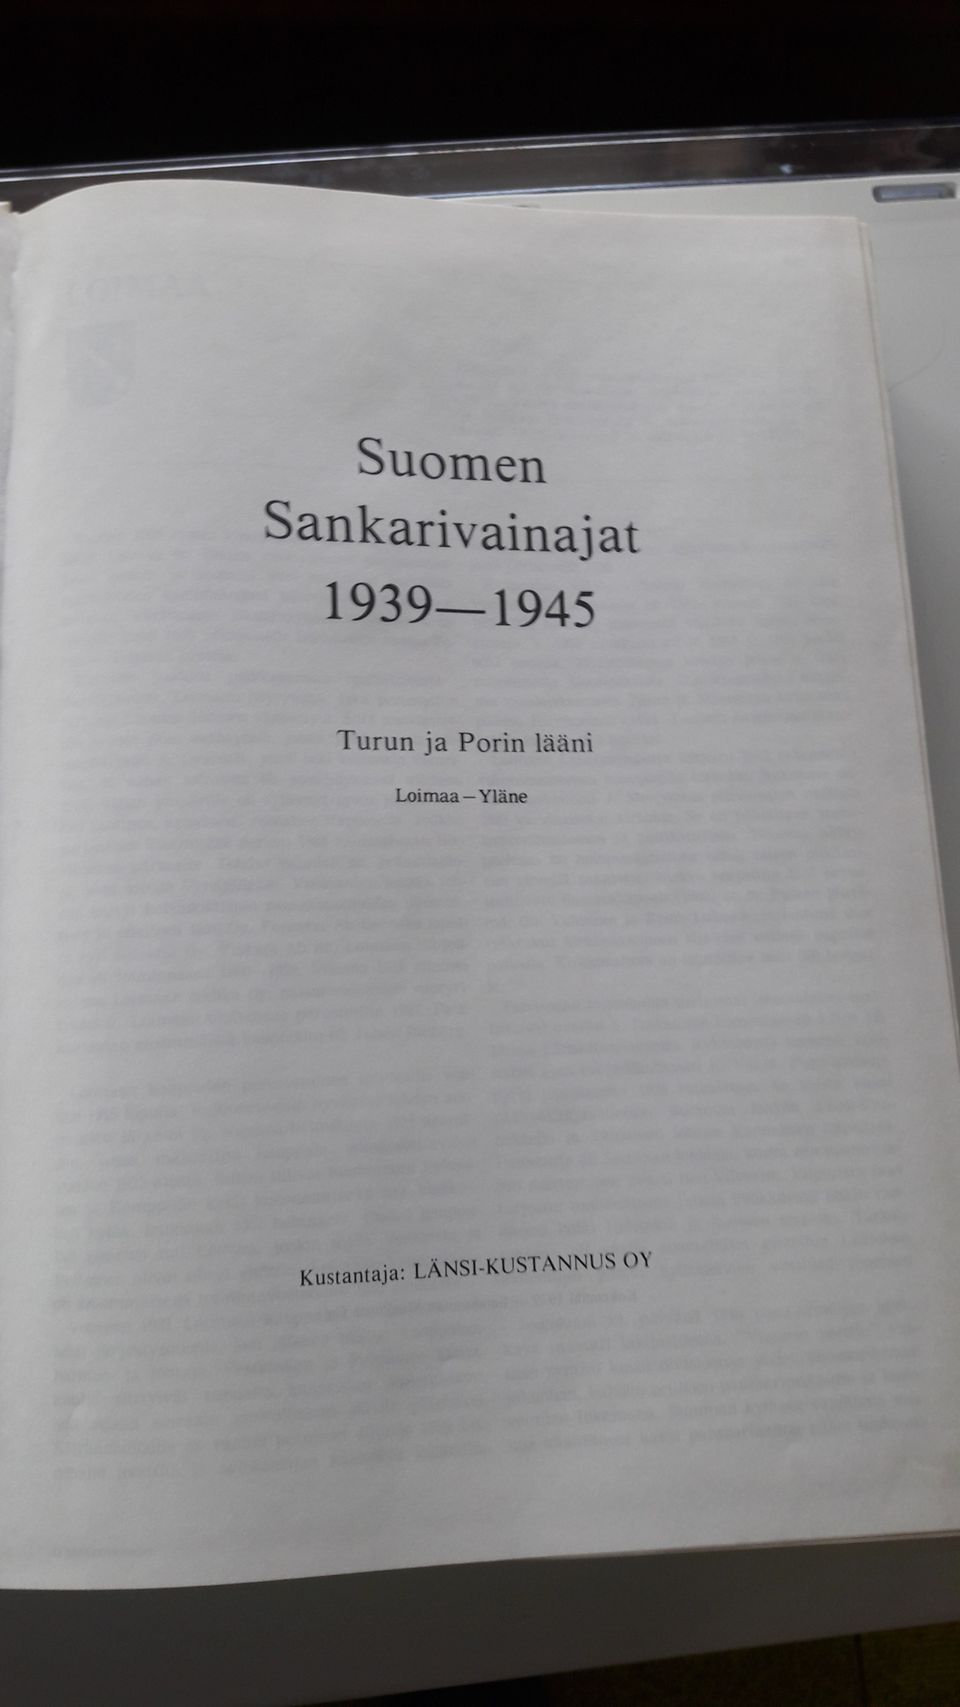 Suomen Sankarivainajat 1943 - 1943 kuvat ja henkilötiedot